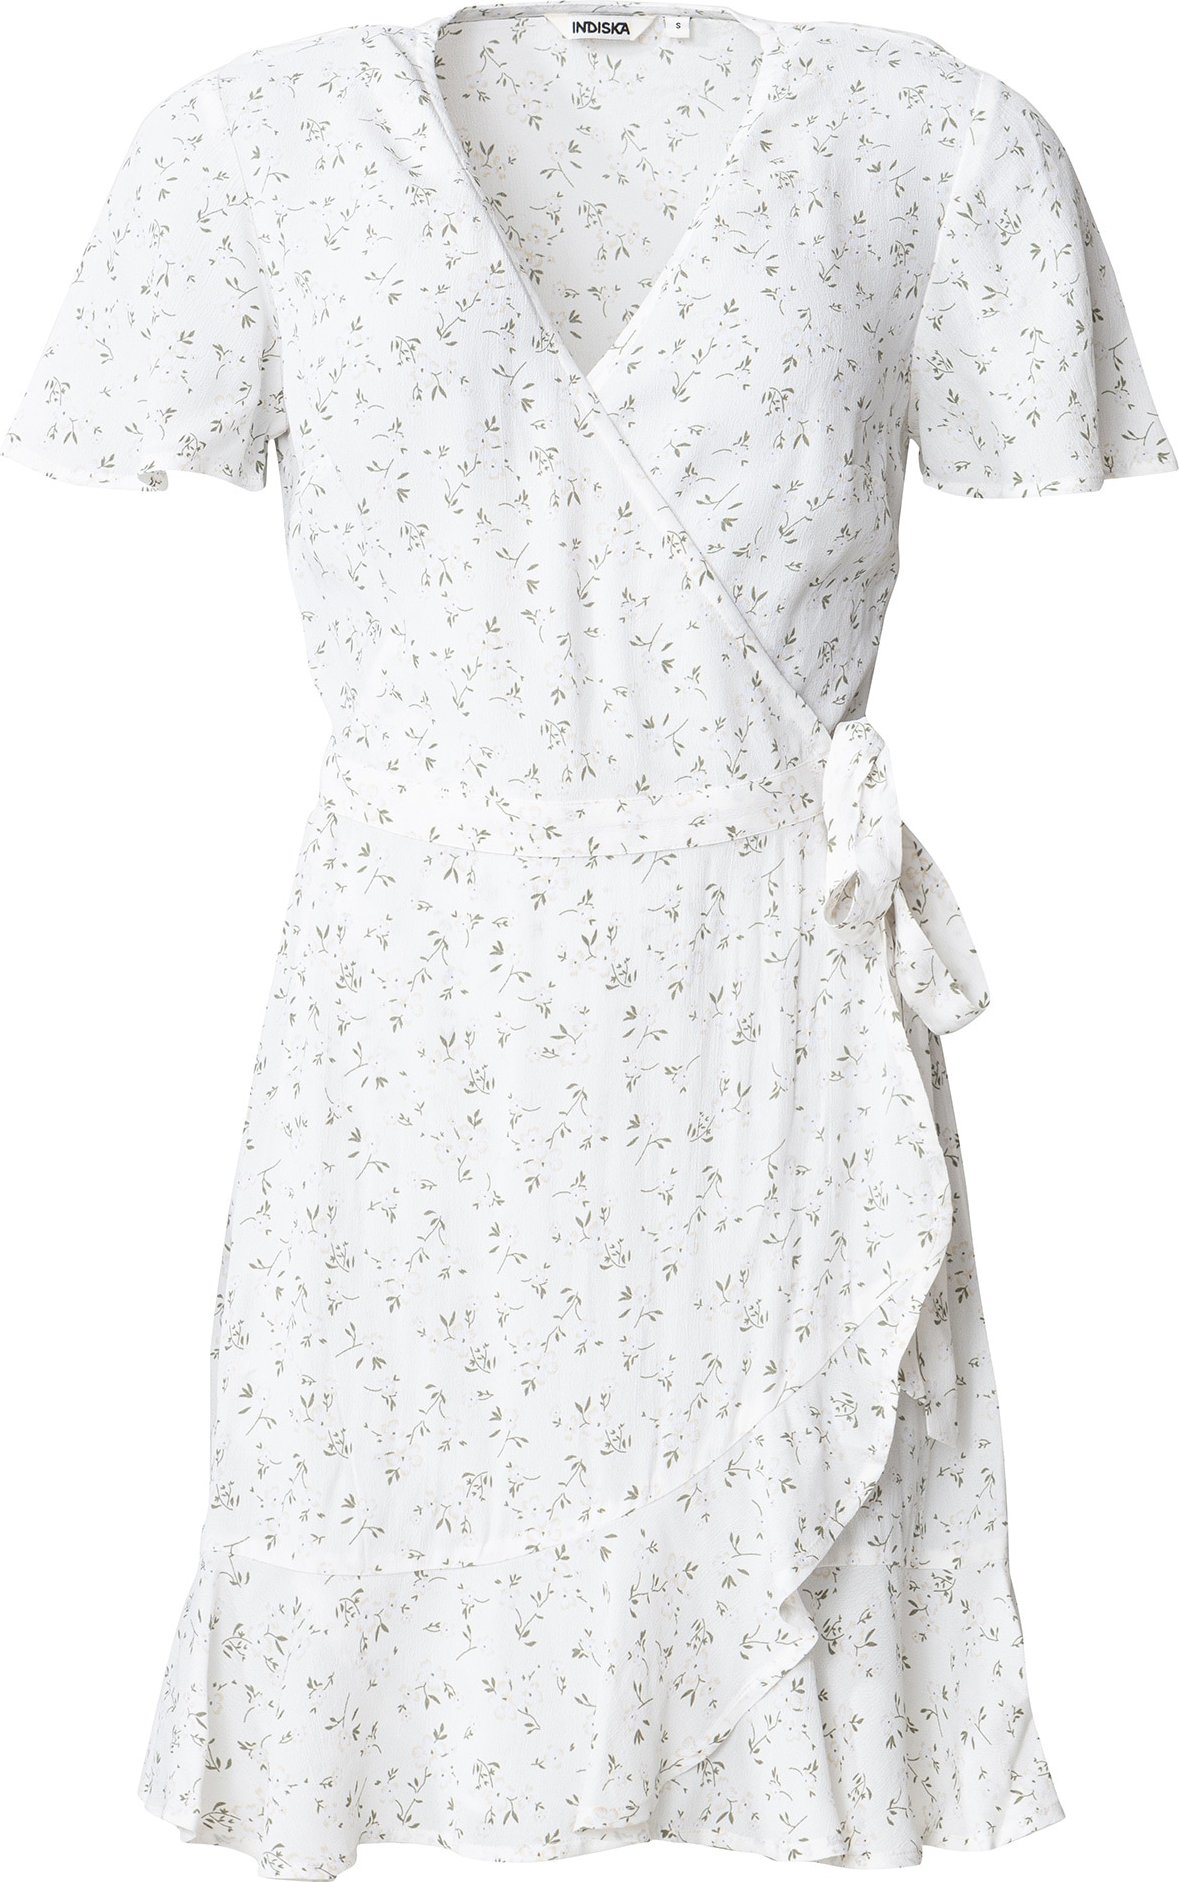 Indiska Letní šaty 'Nola' bílá / olivová